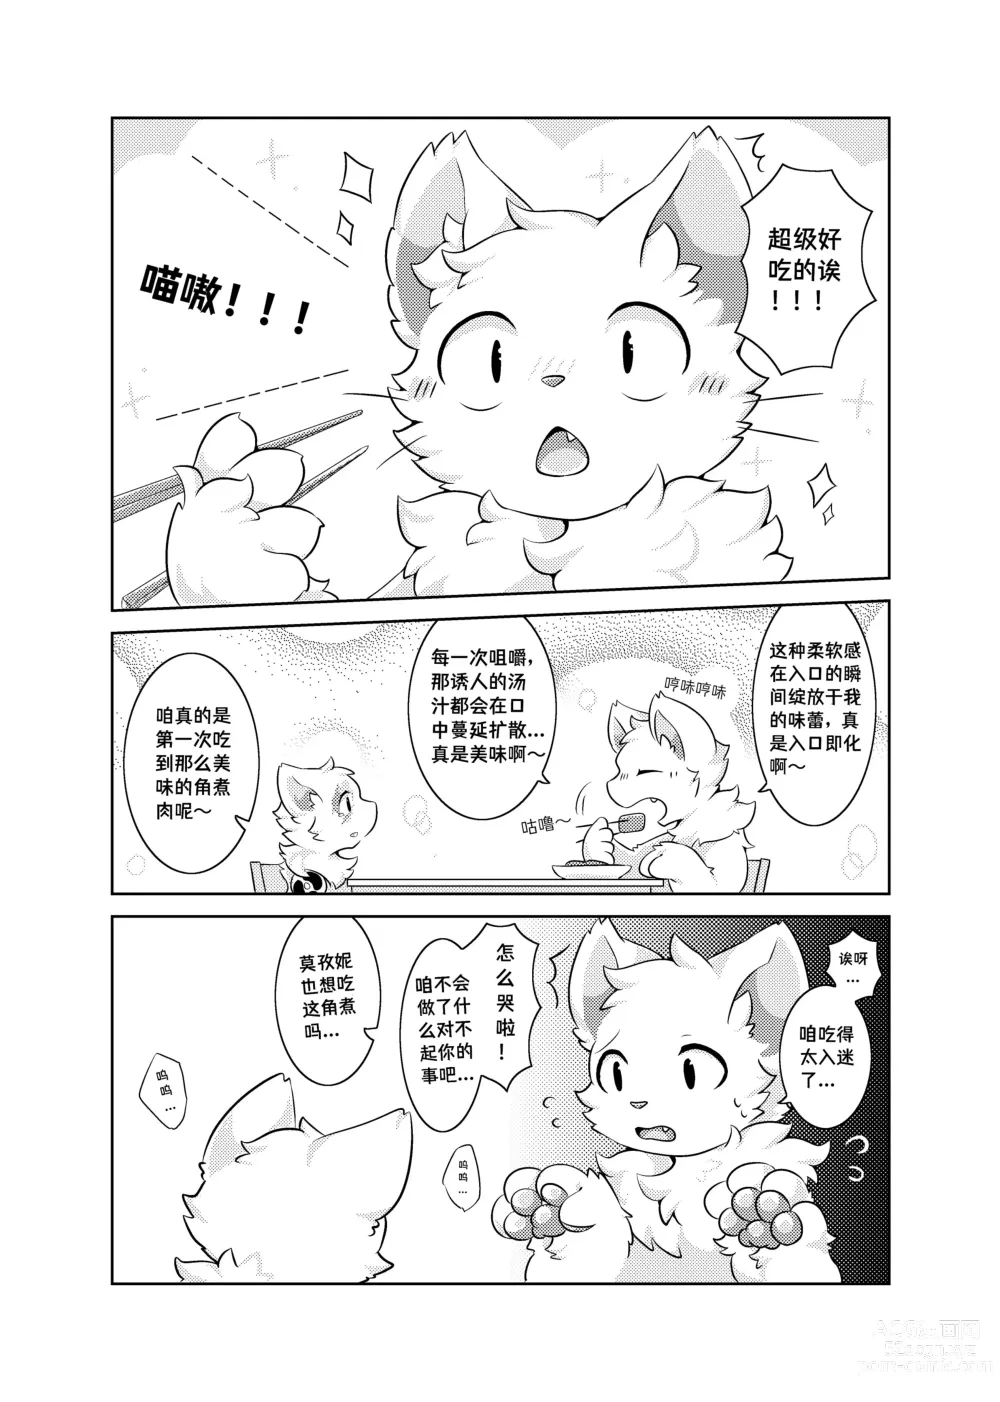 Page 36 of doujinshi Bokuyo motsuni no oishii seikatu.R-18G